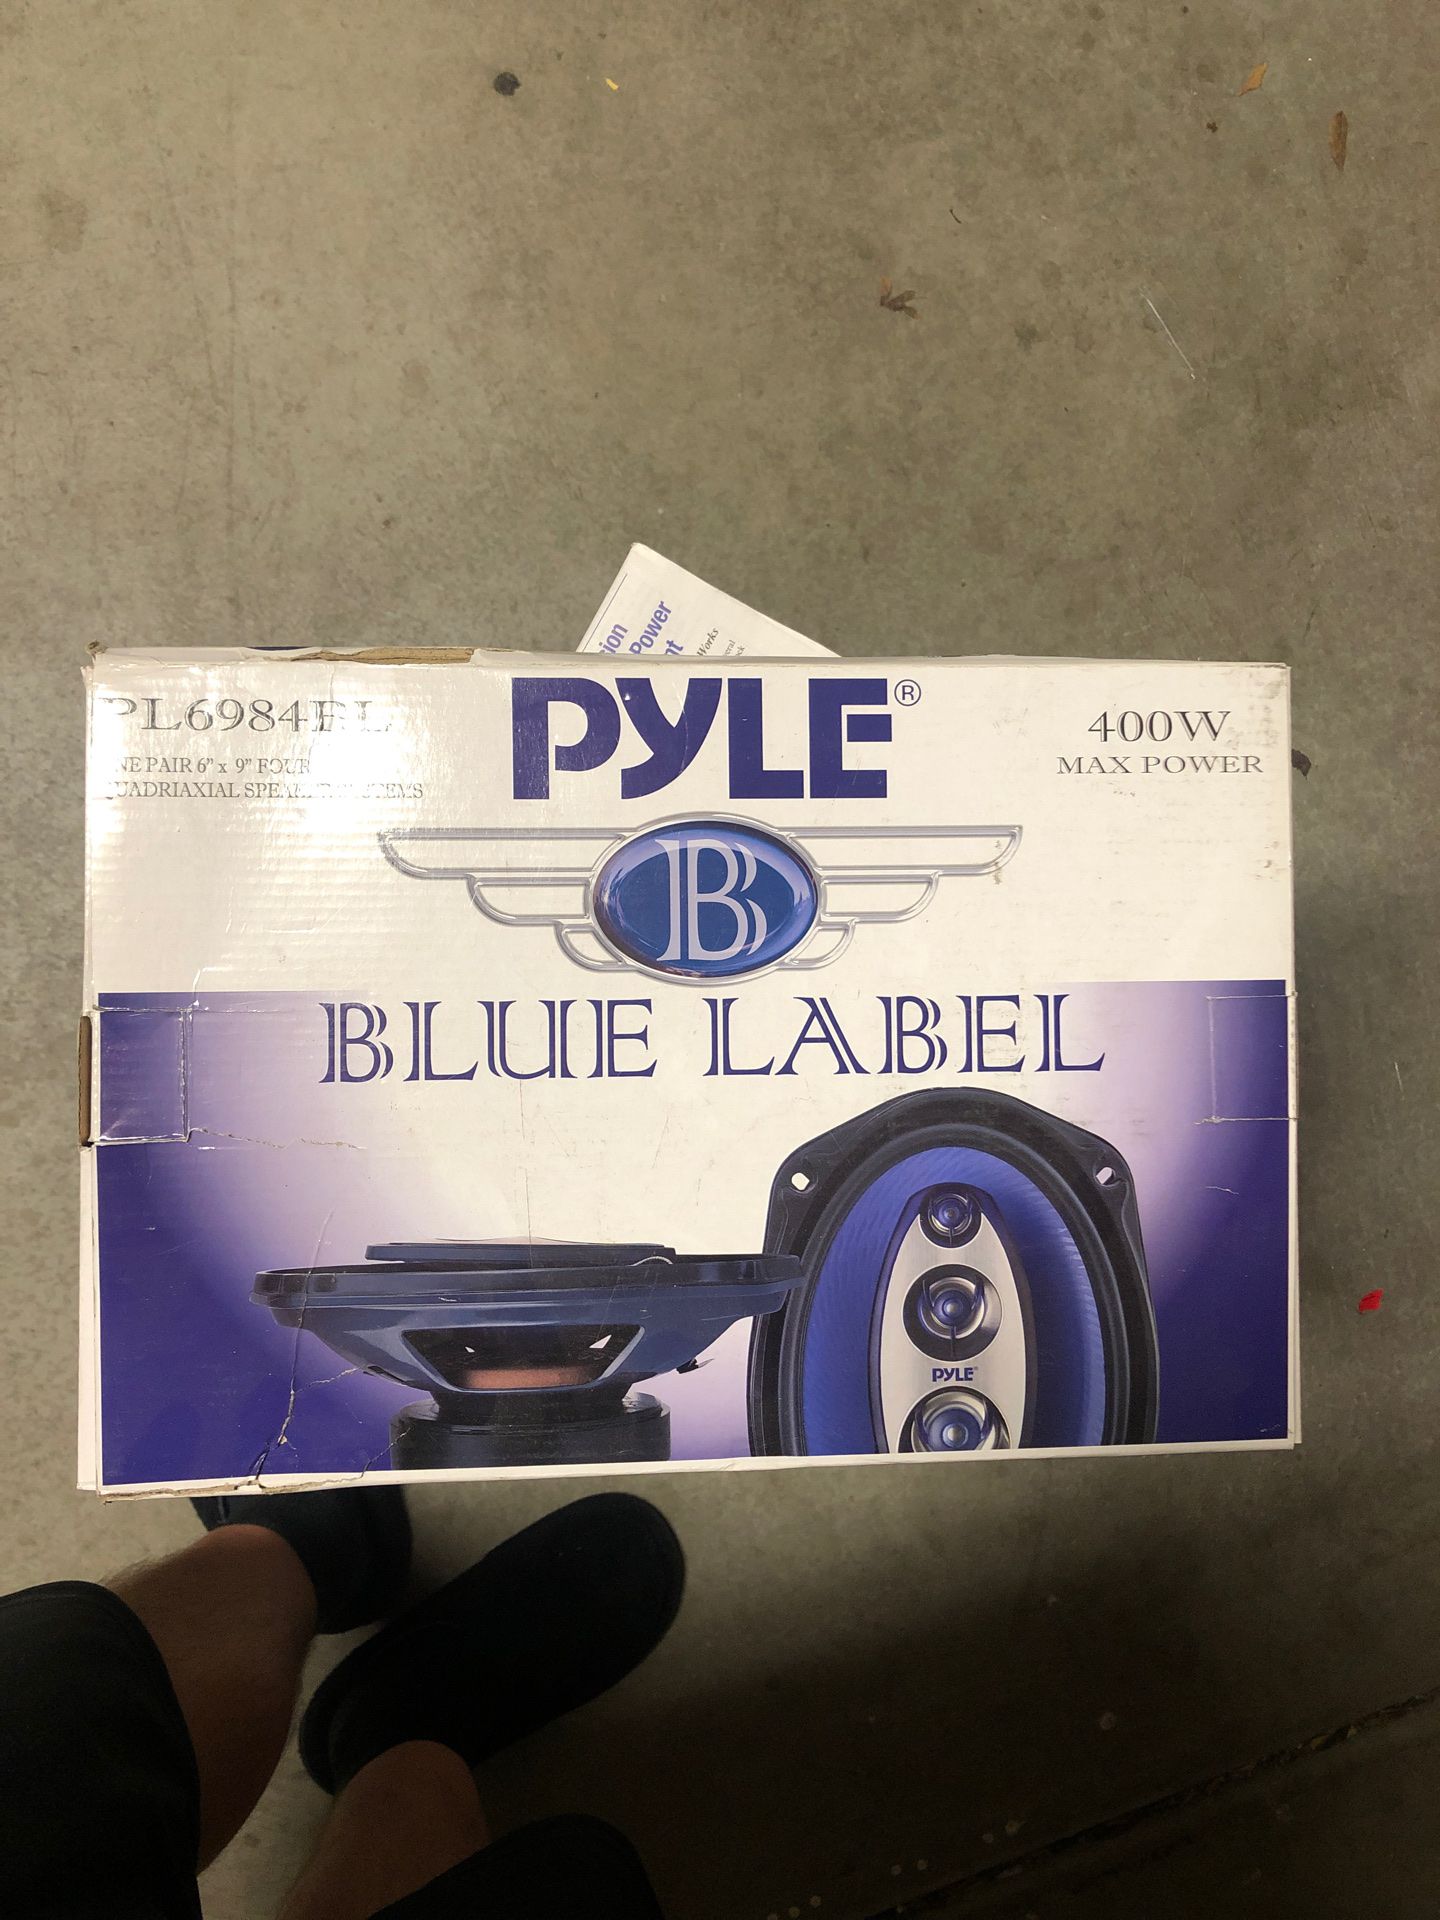 Pyle 6”x9” speakers brand new